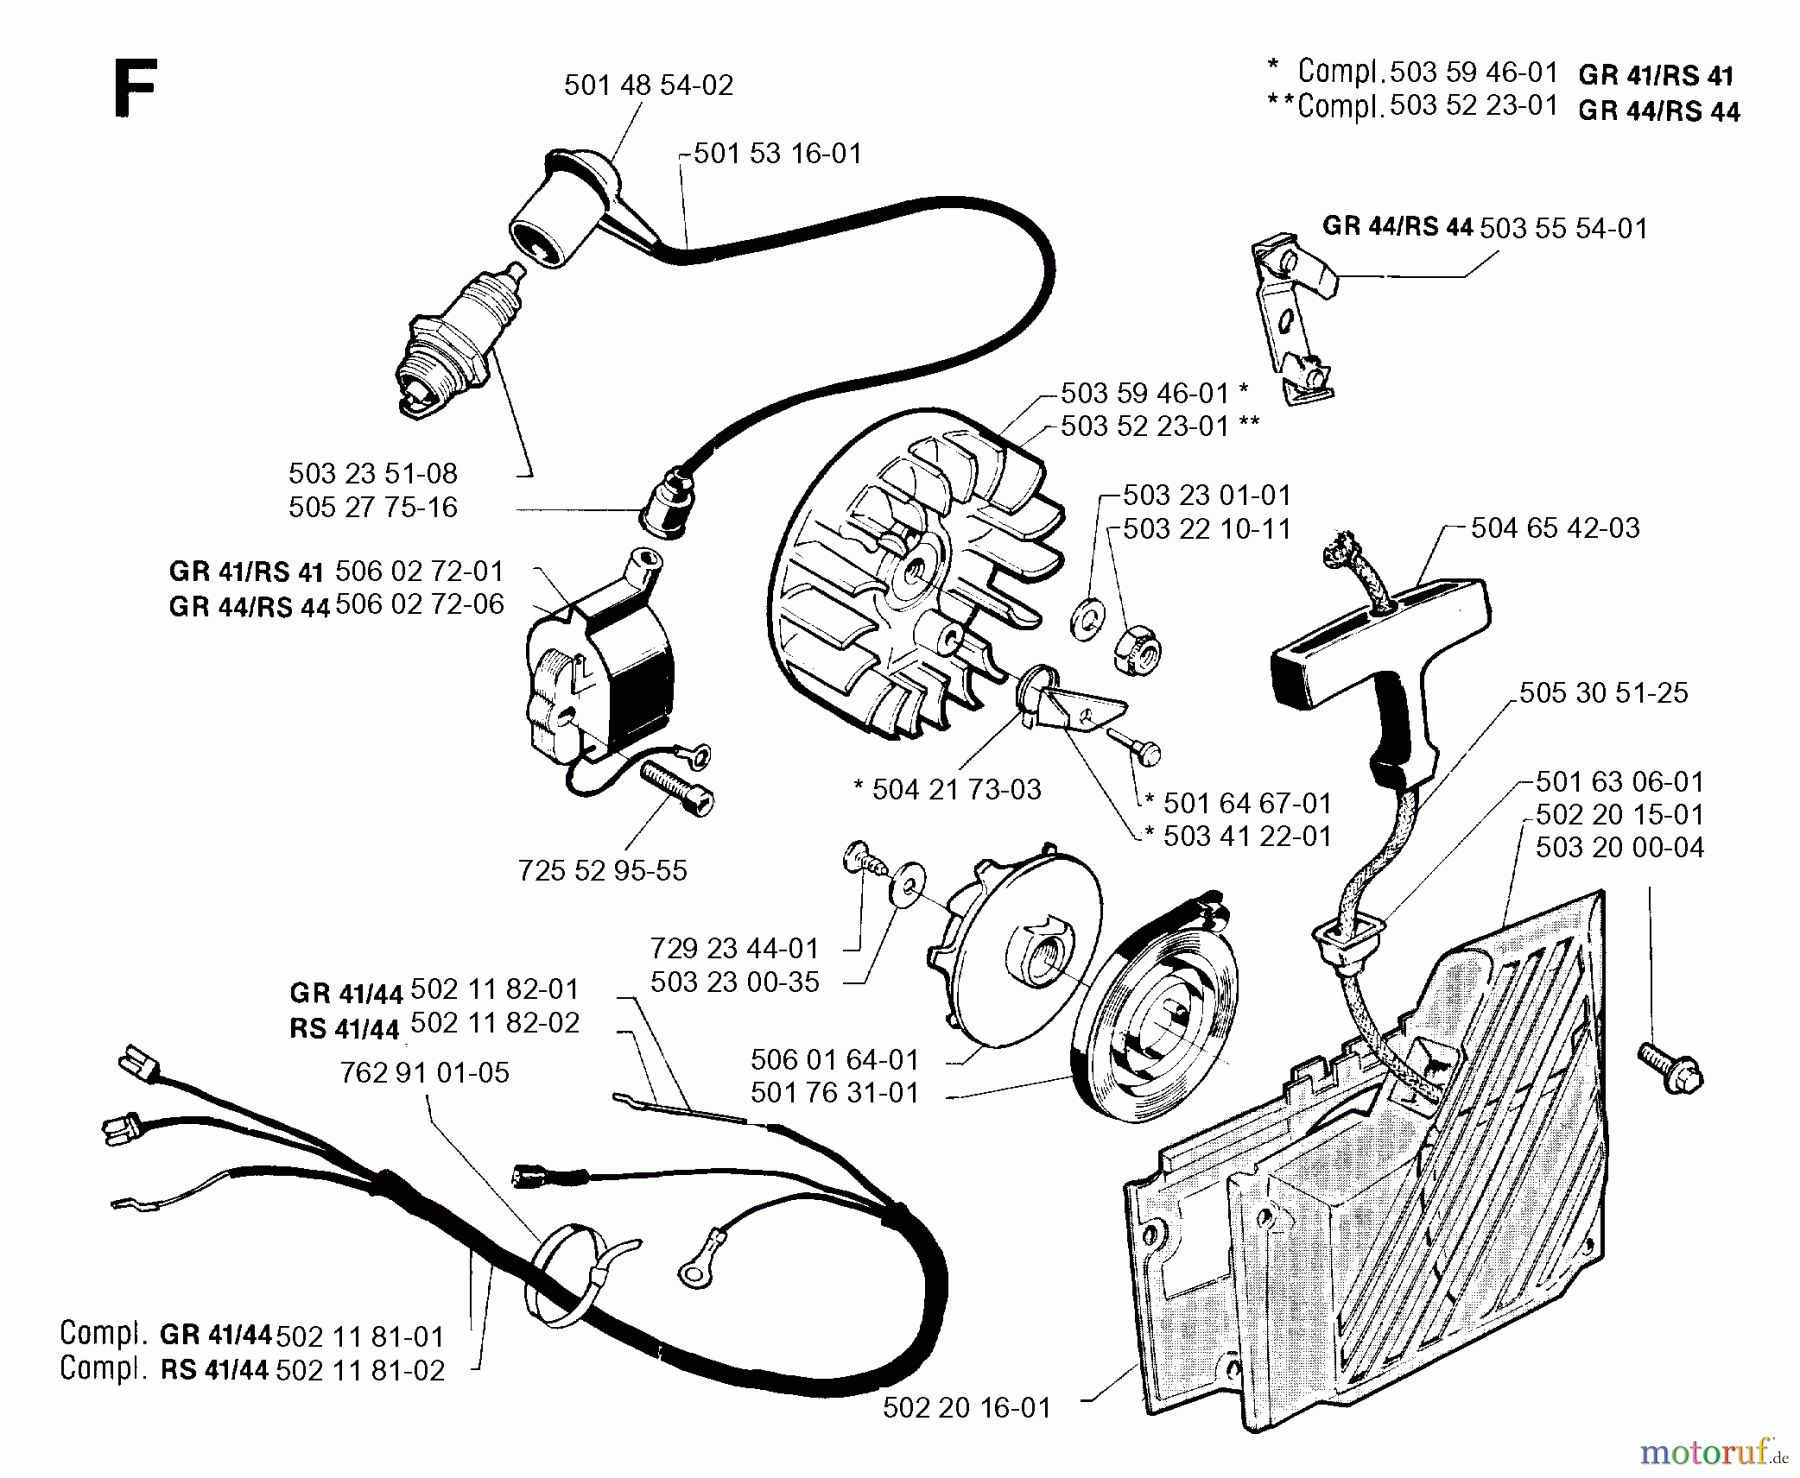  Jonsered Motorsensen, Trimmer RS44 - Jonsered String/Brush Trimmer (1992-09) STARTER